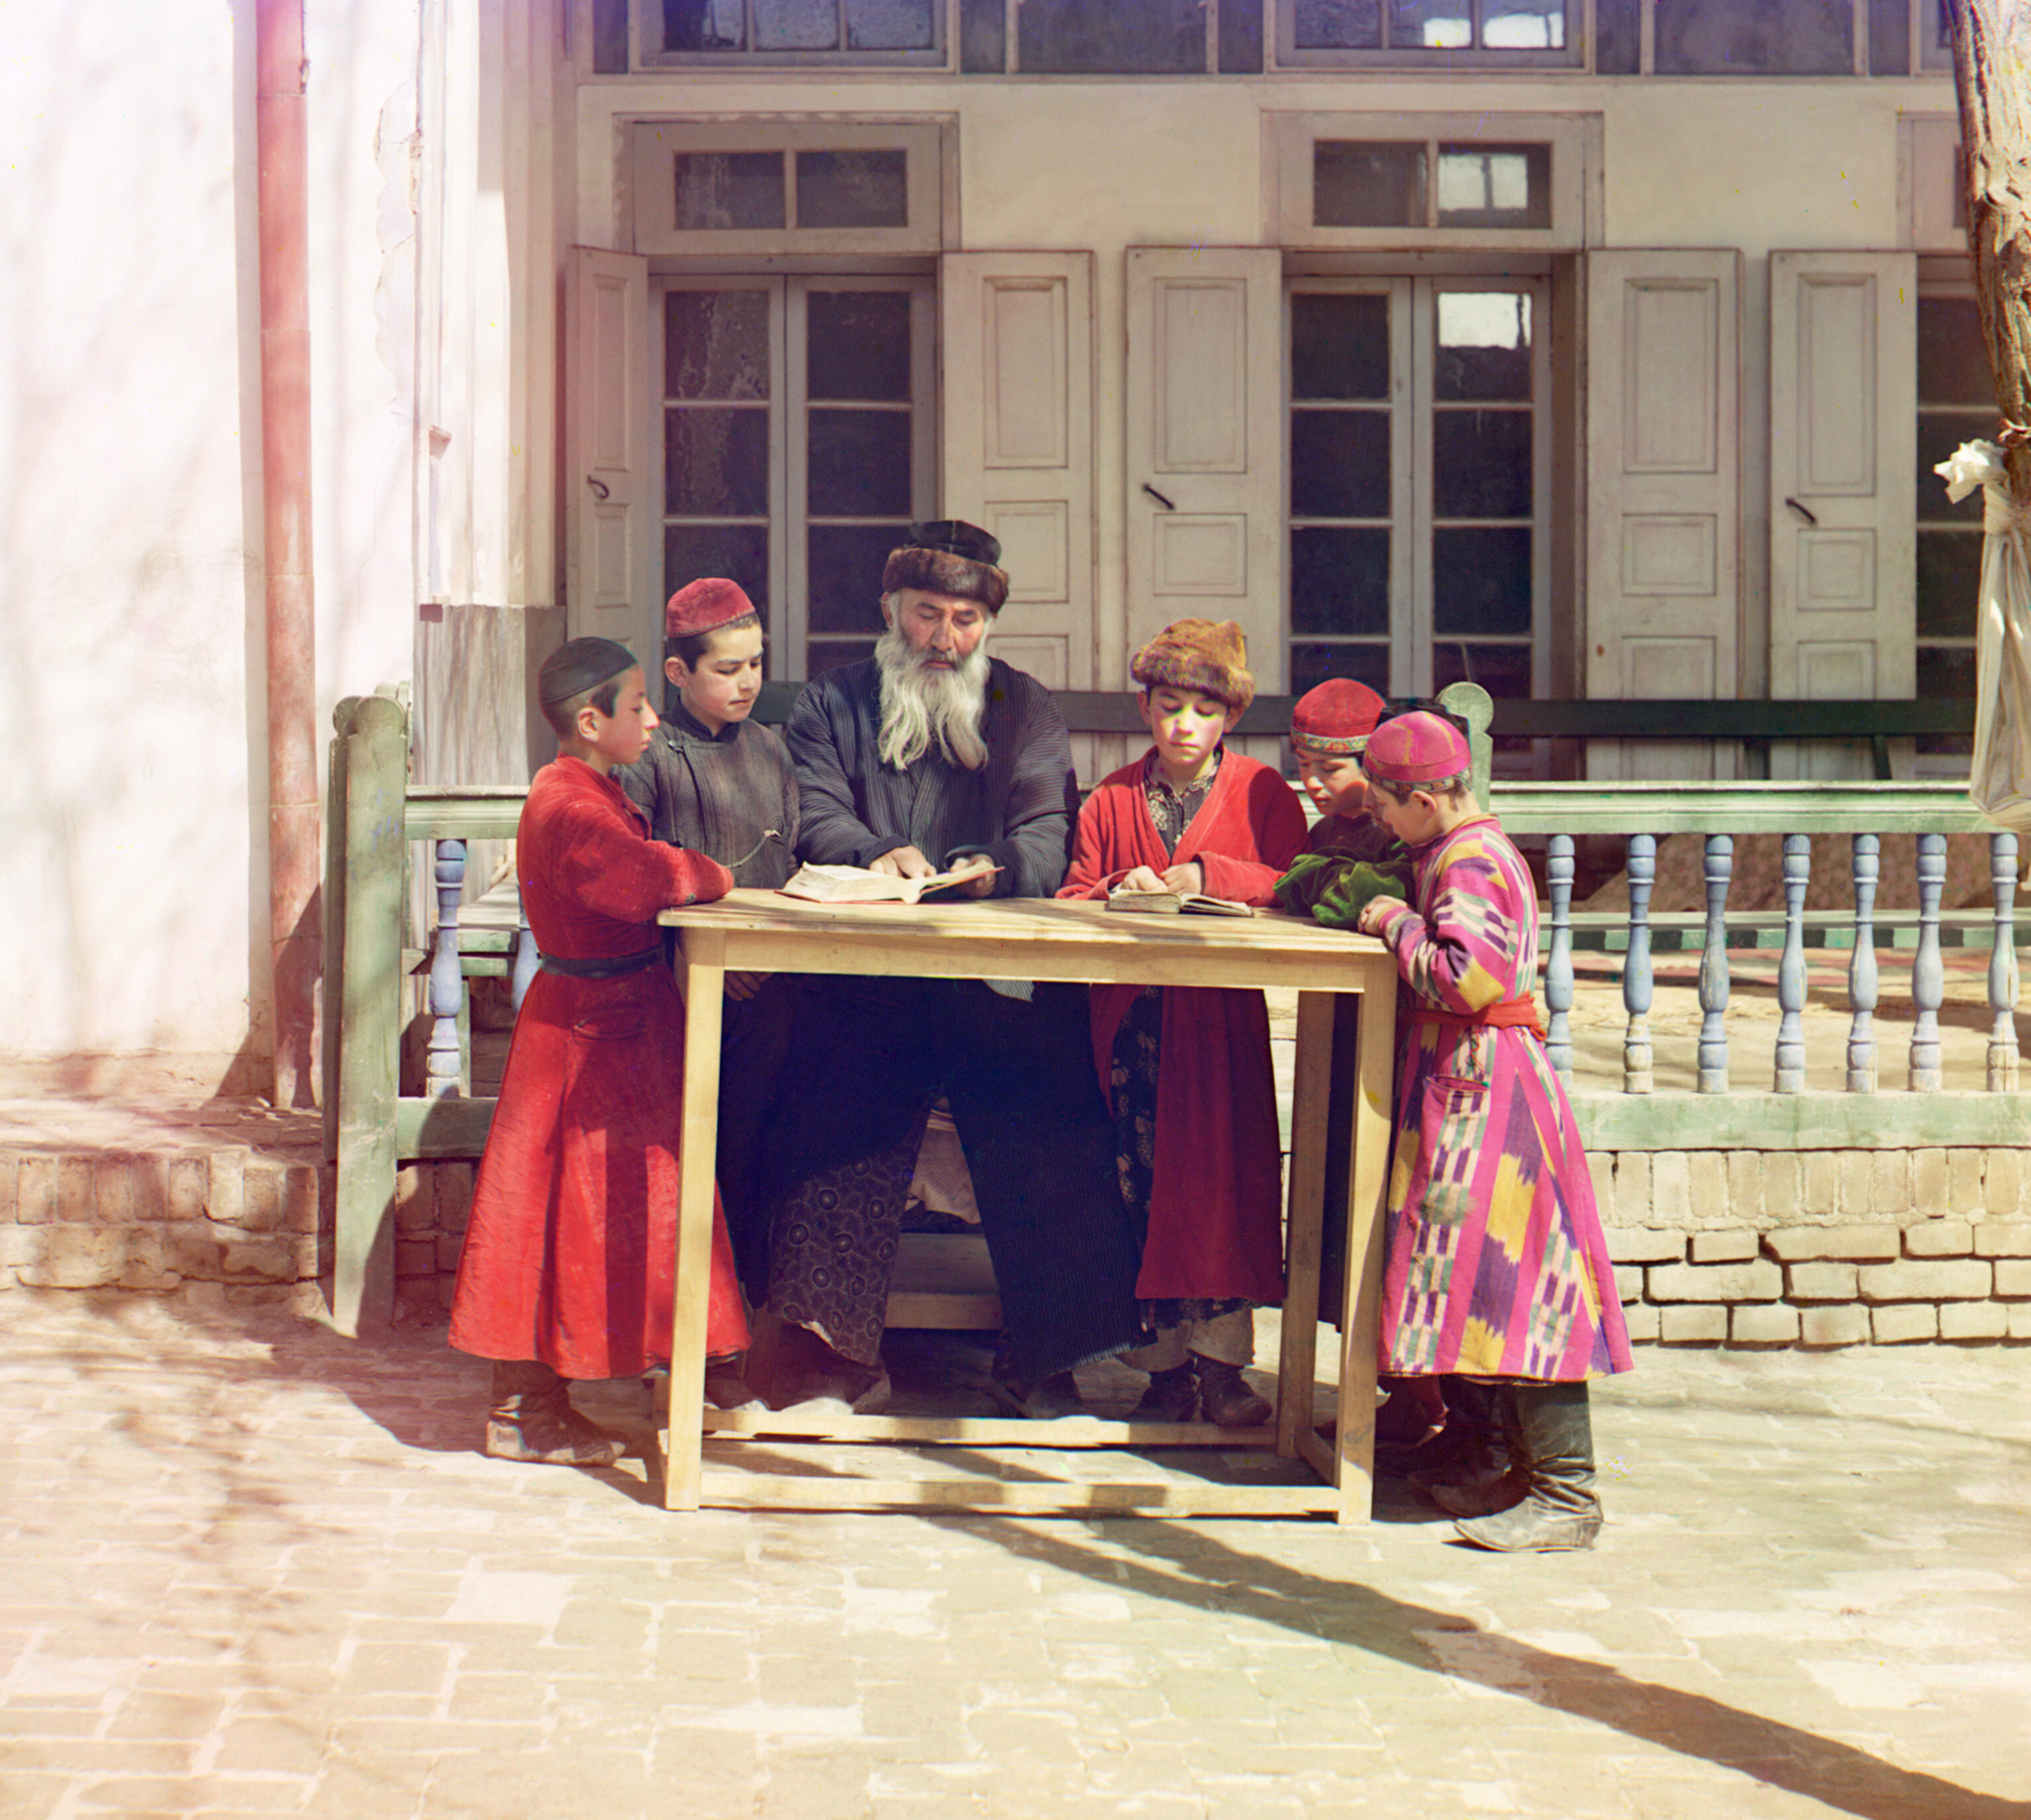 Группа еврейских детей с учителем. Самарканд, 1905-1915, фотограф Сергей Прокудин-Горский